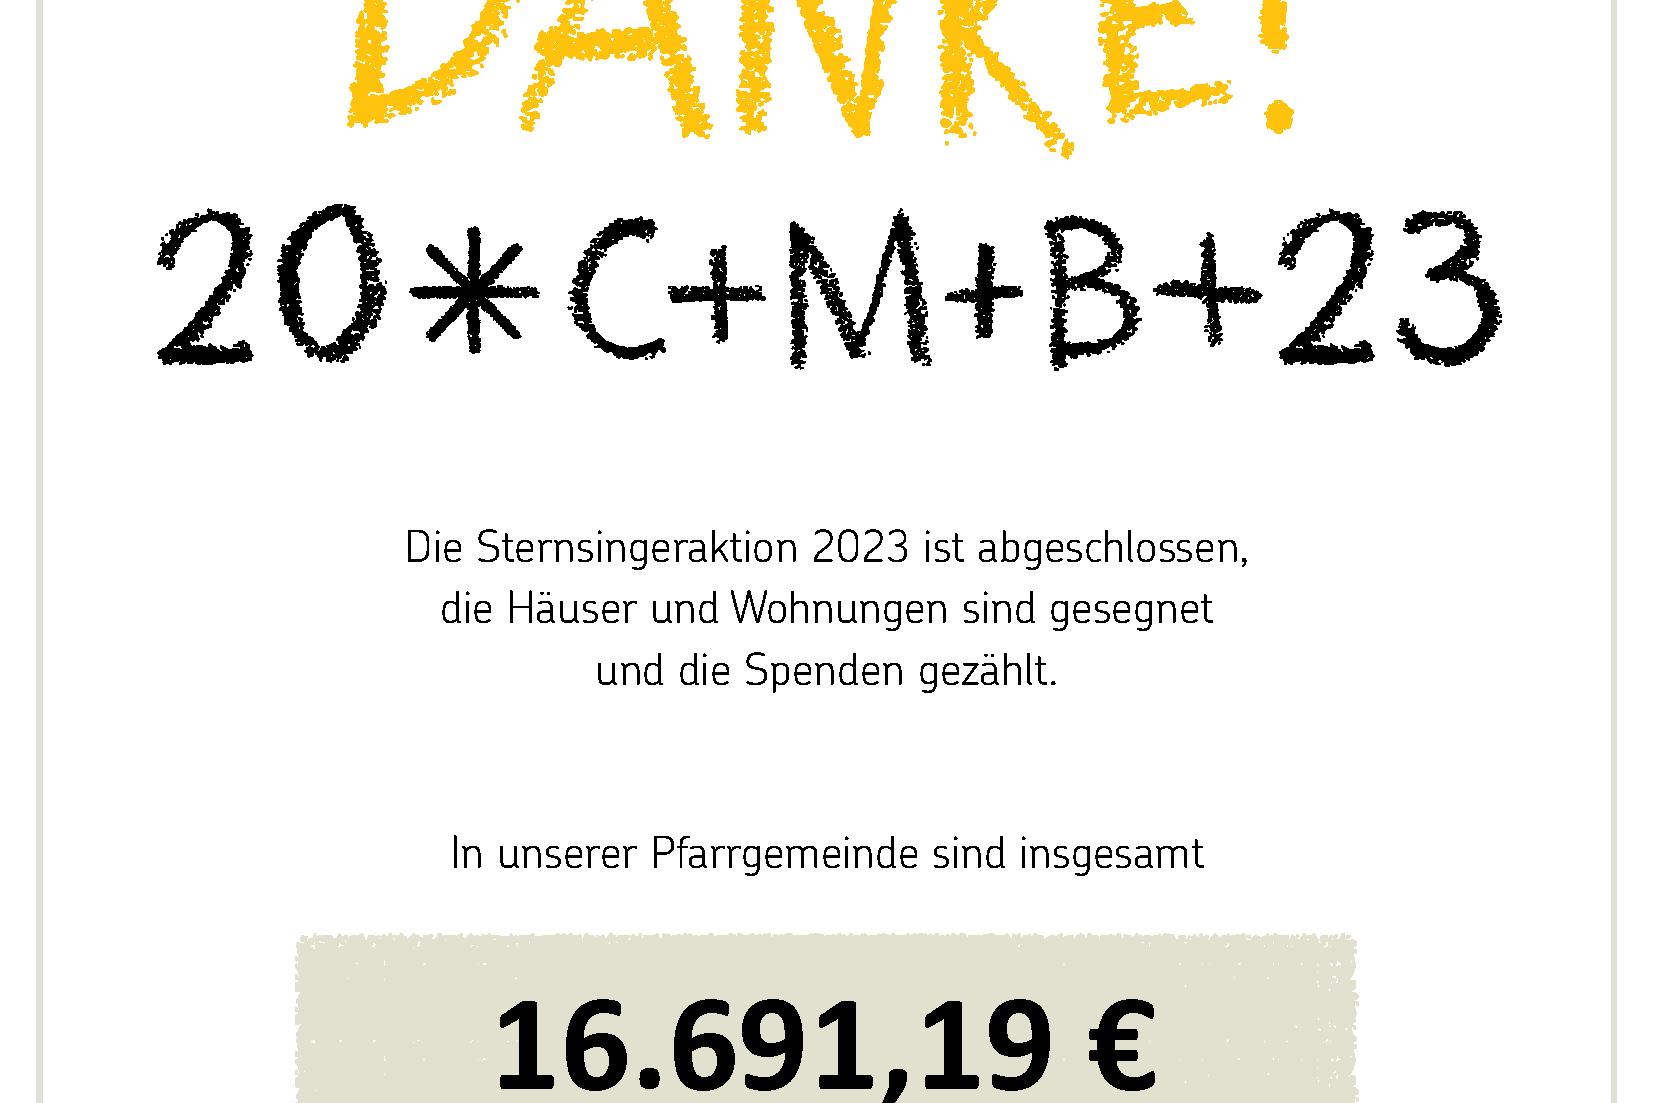 xxx2023_Danke_Ergebnis_interaktiv (c) Kindermissionswerk Die Sternsinger